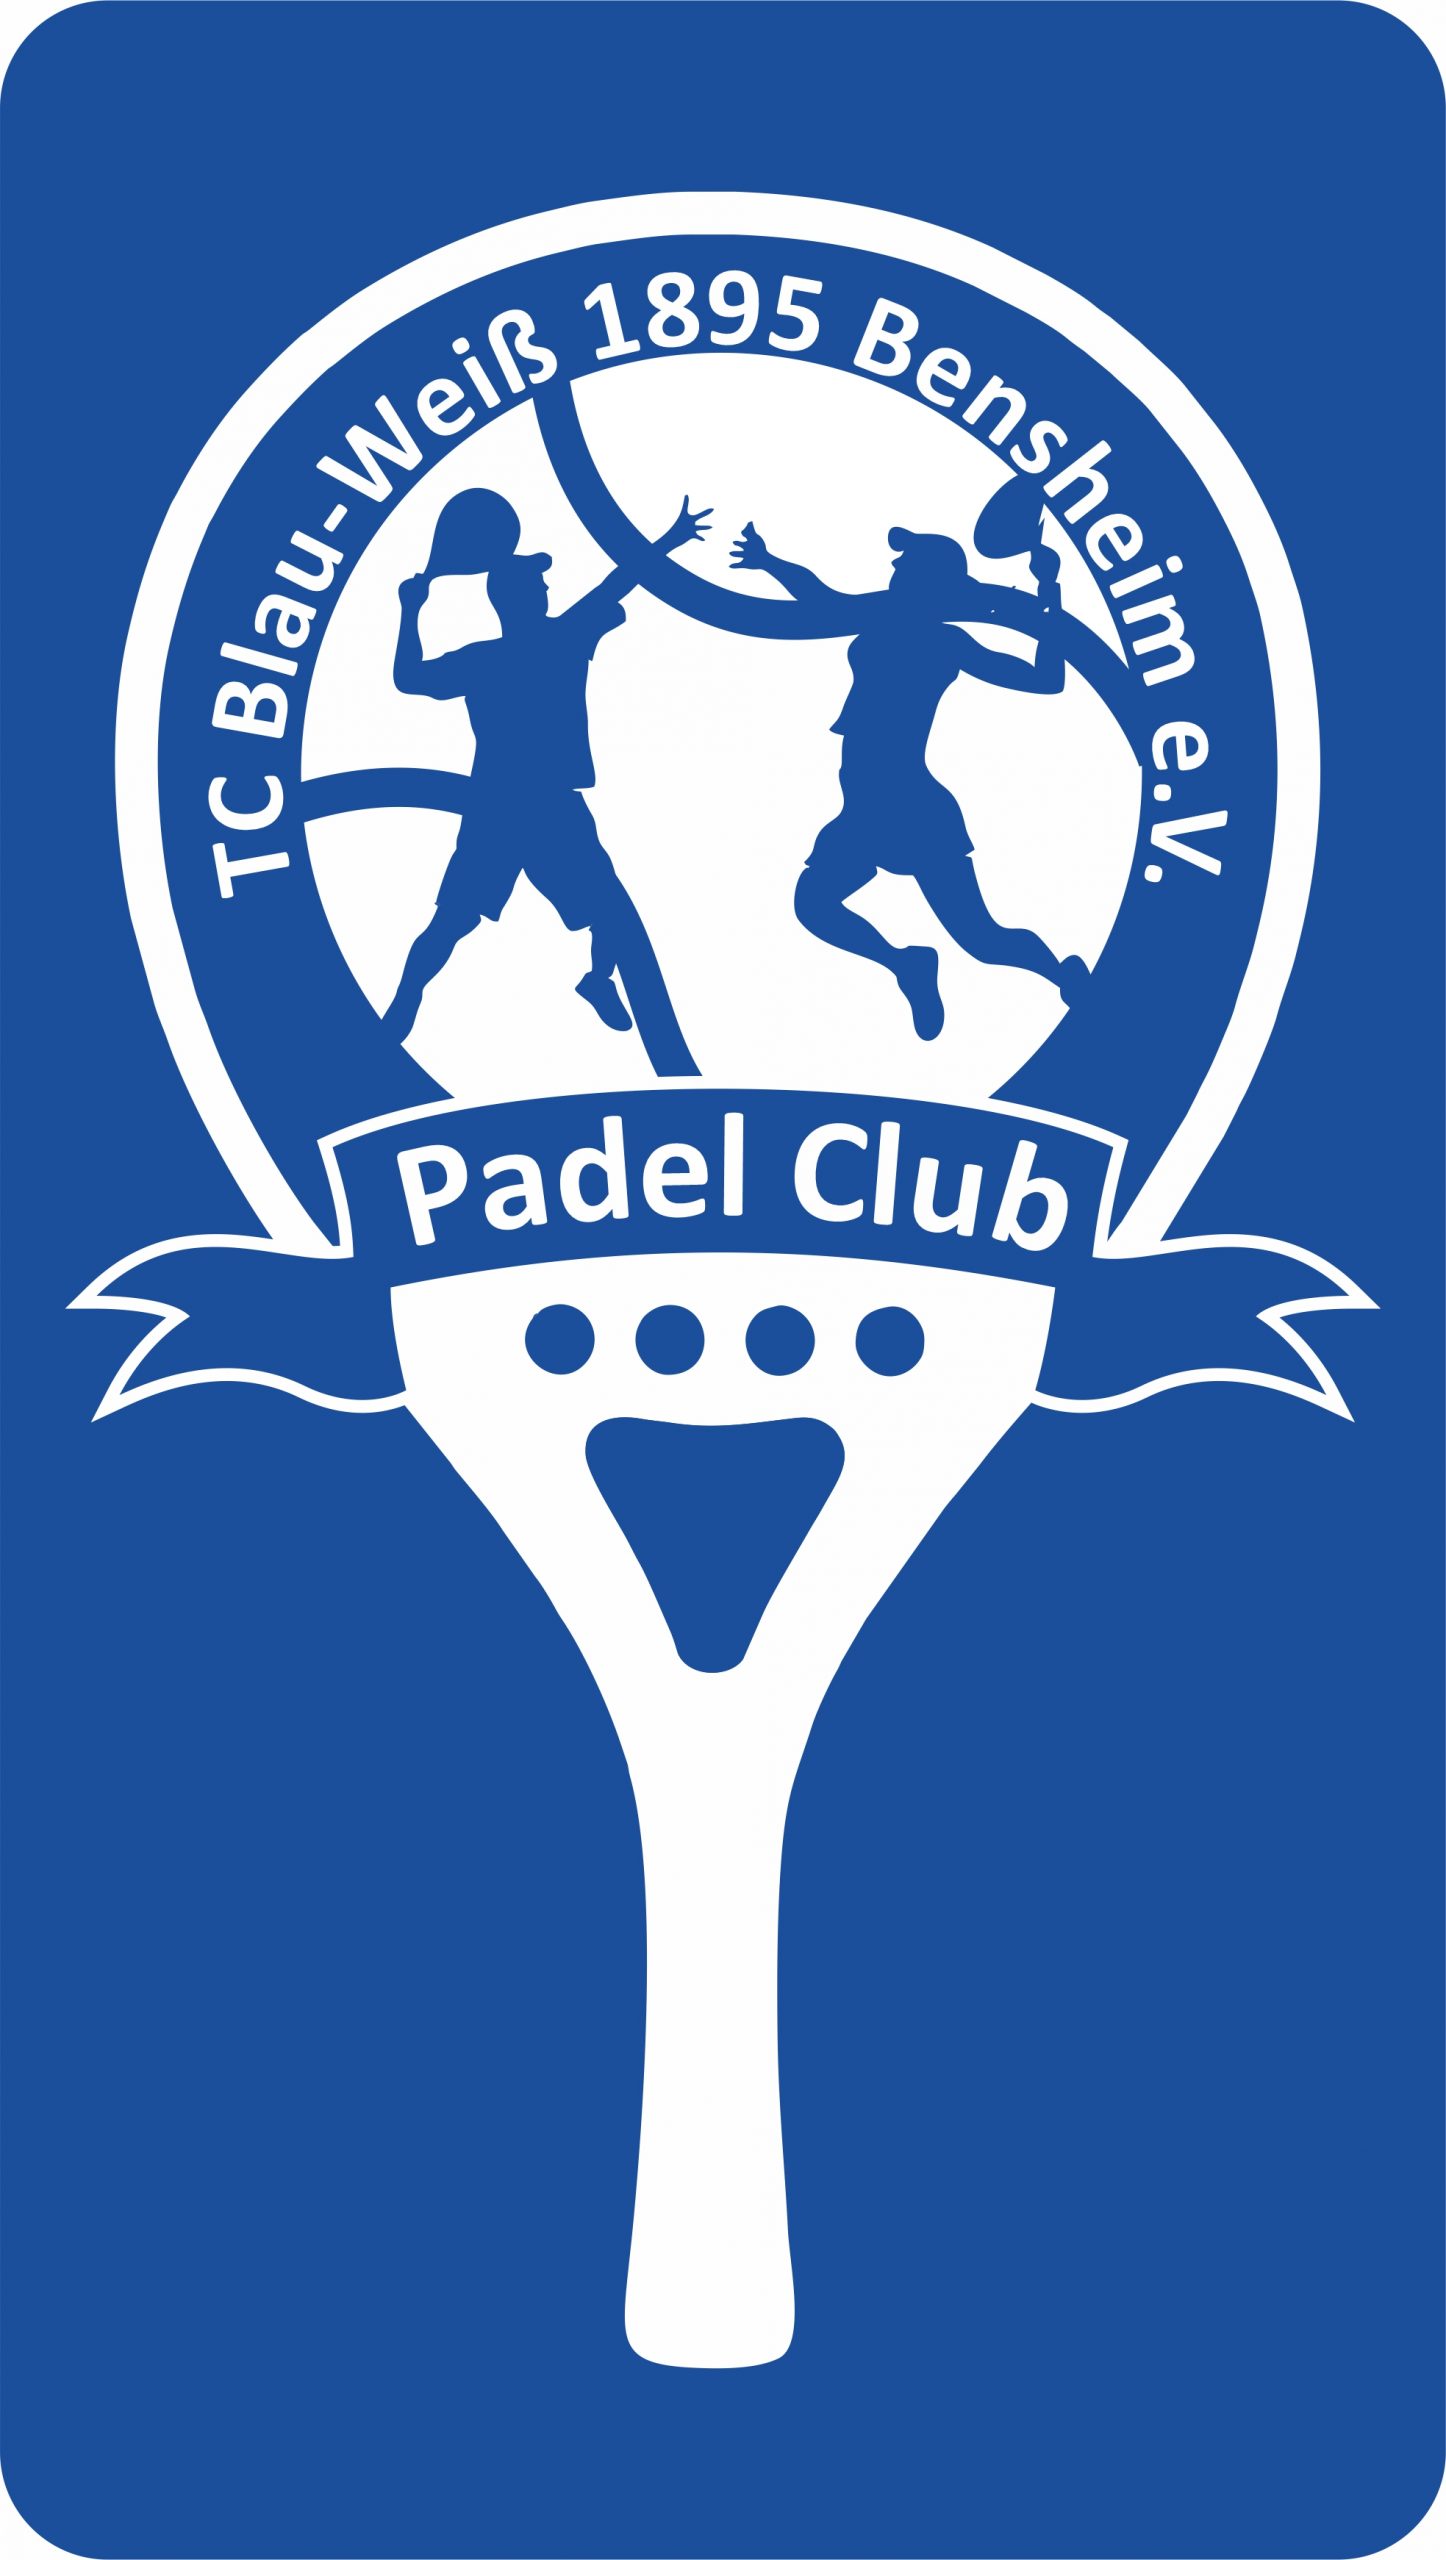 Padel Club Bensheim